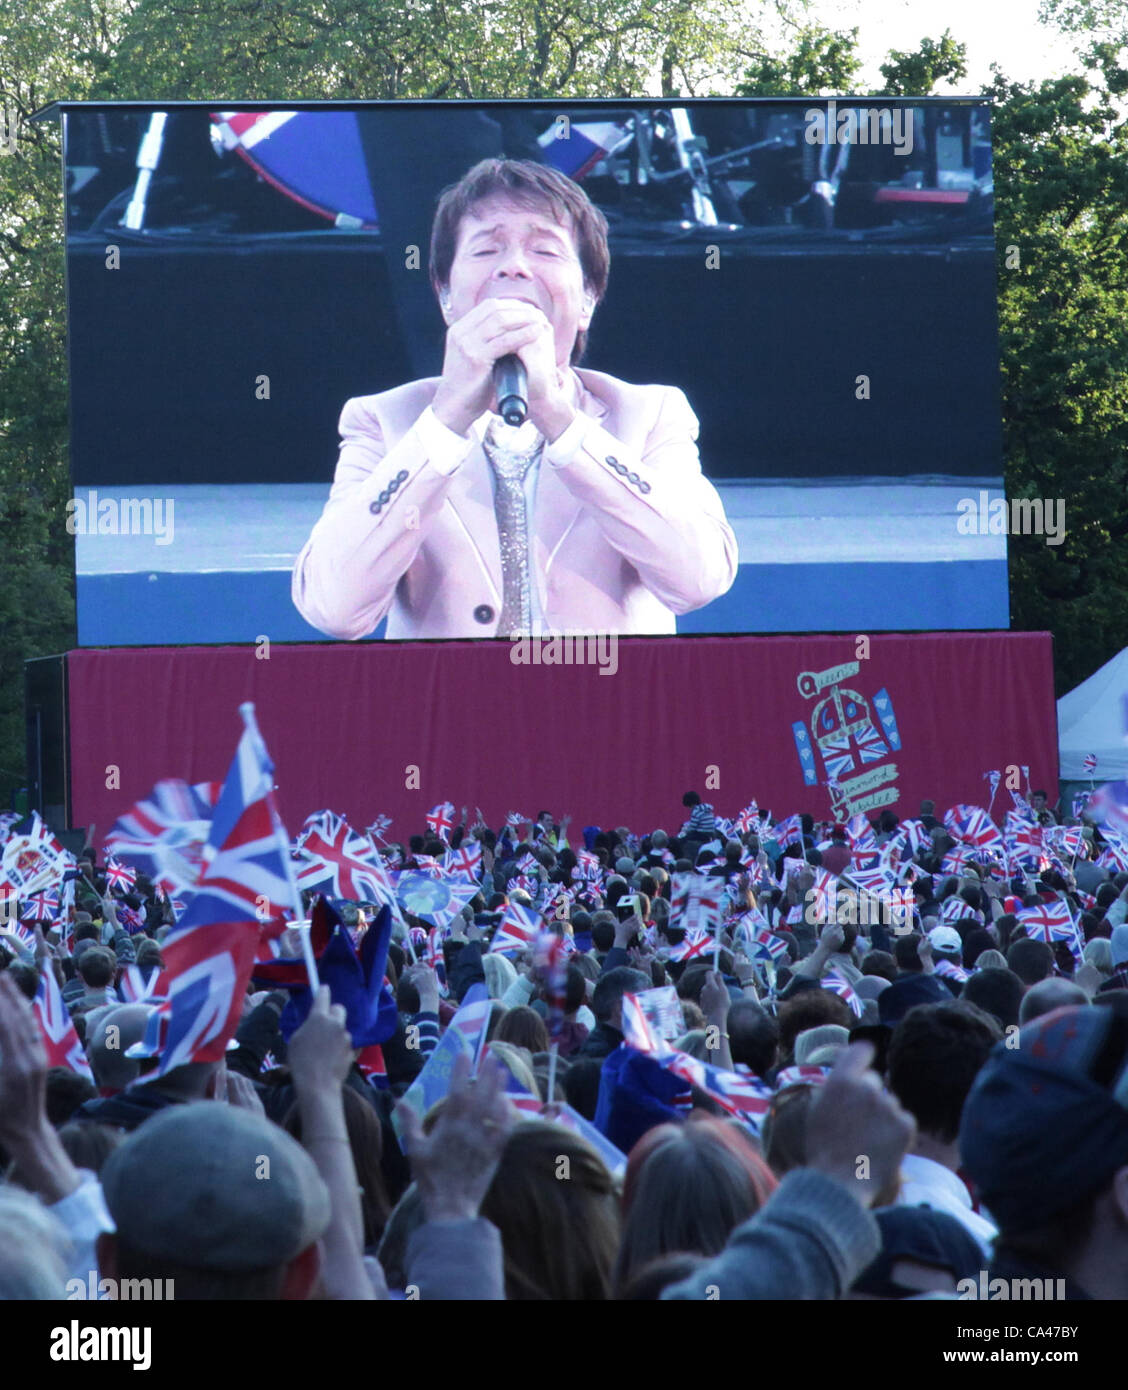 London, UK. 4. Juni 2012. Fans in London, Sir Cliff Richard auf der großen Leinwand im St. James Park Konzert anlässlich der Königin Diamond Jubilee genießen.  . Stockfoto